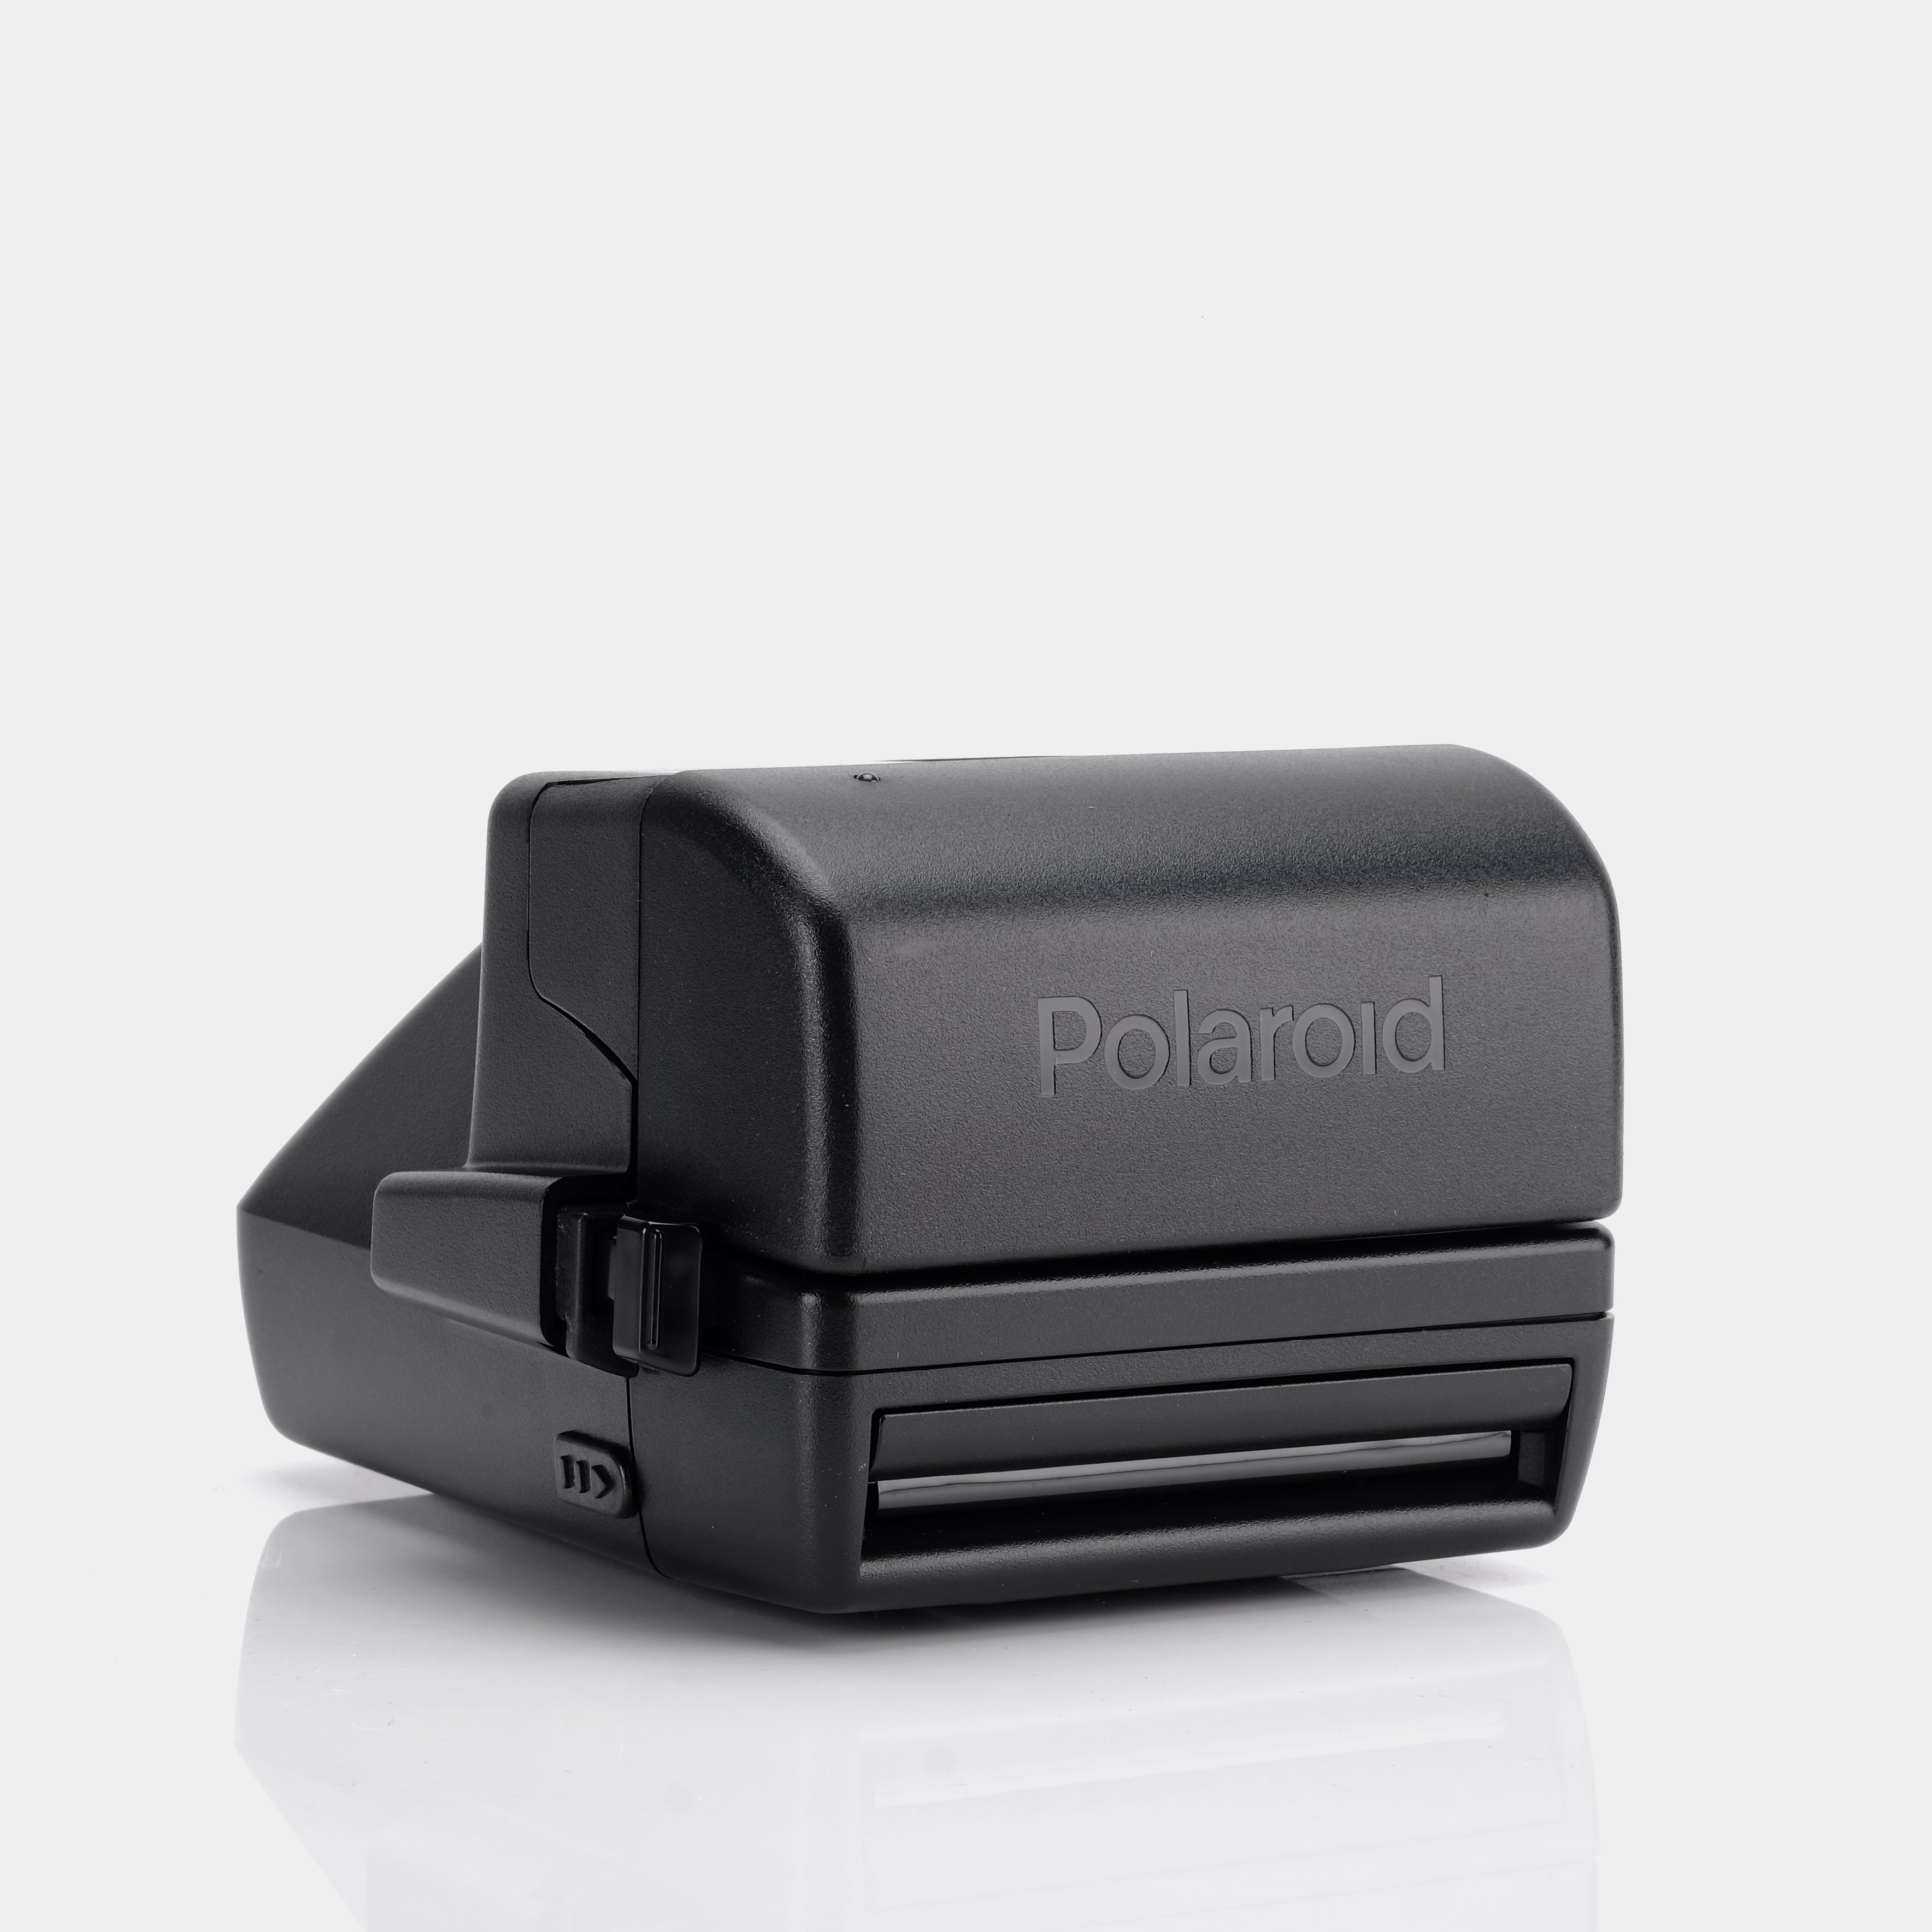 Polaroid 600 Spirit CL Instant Film Camera